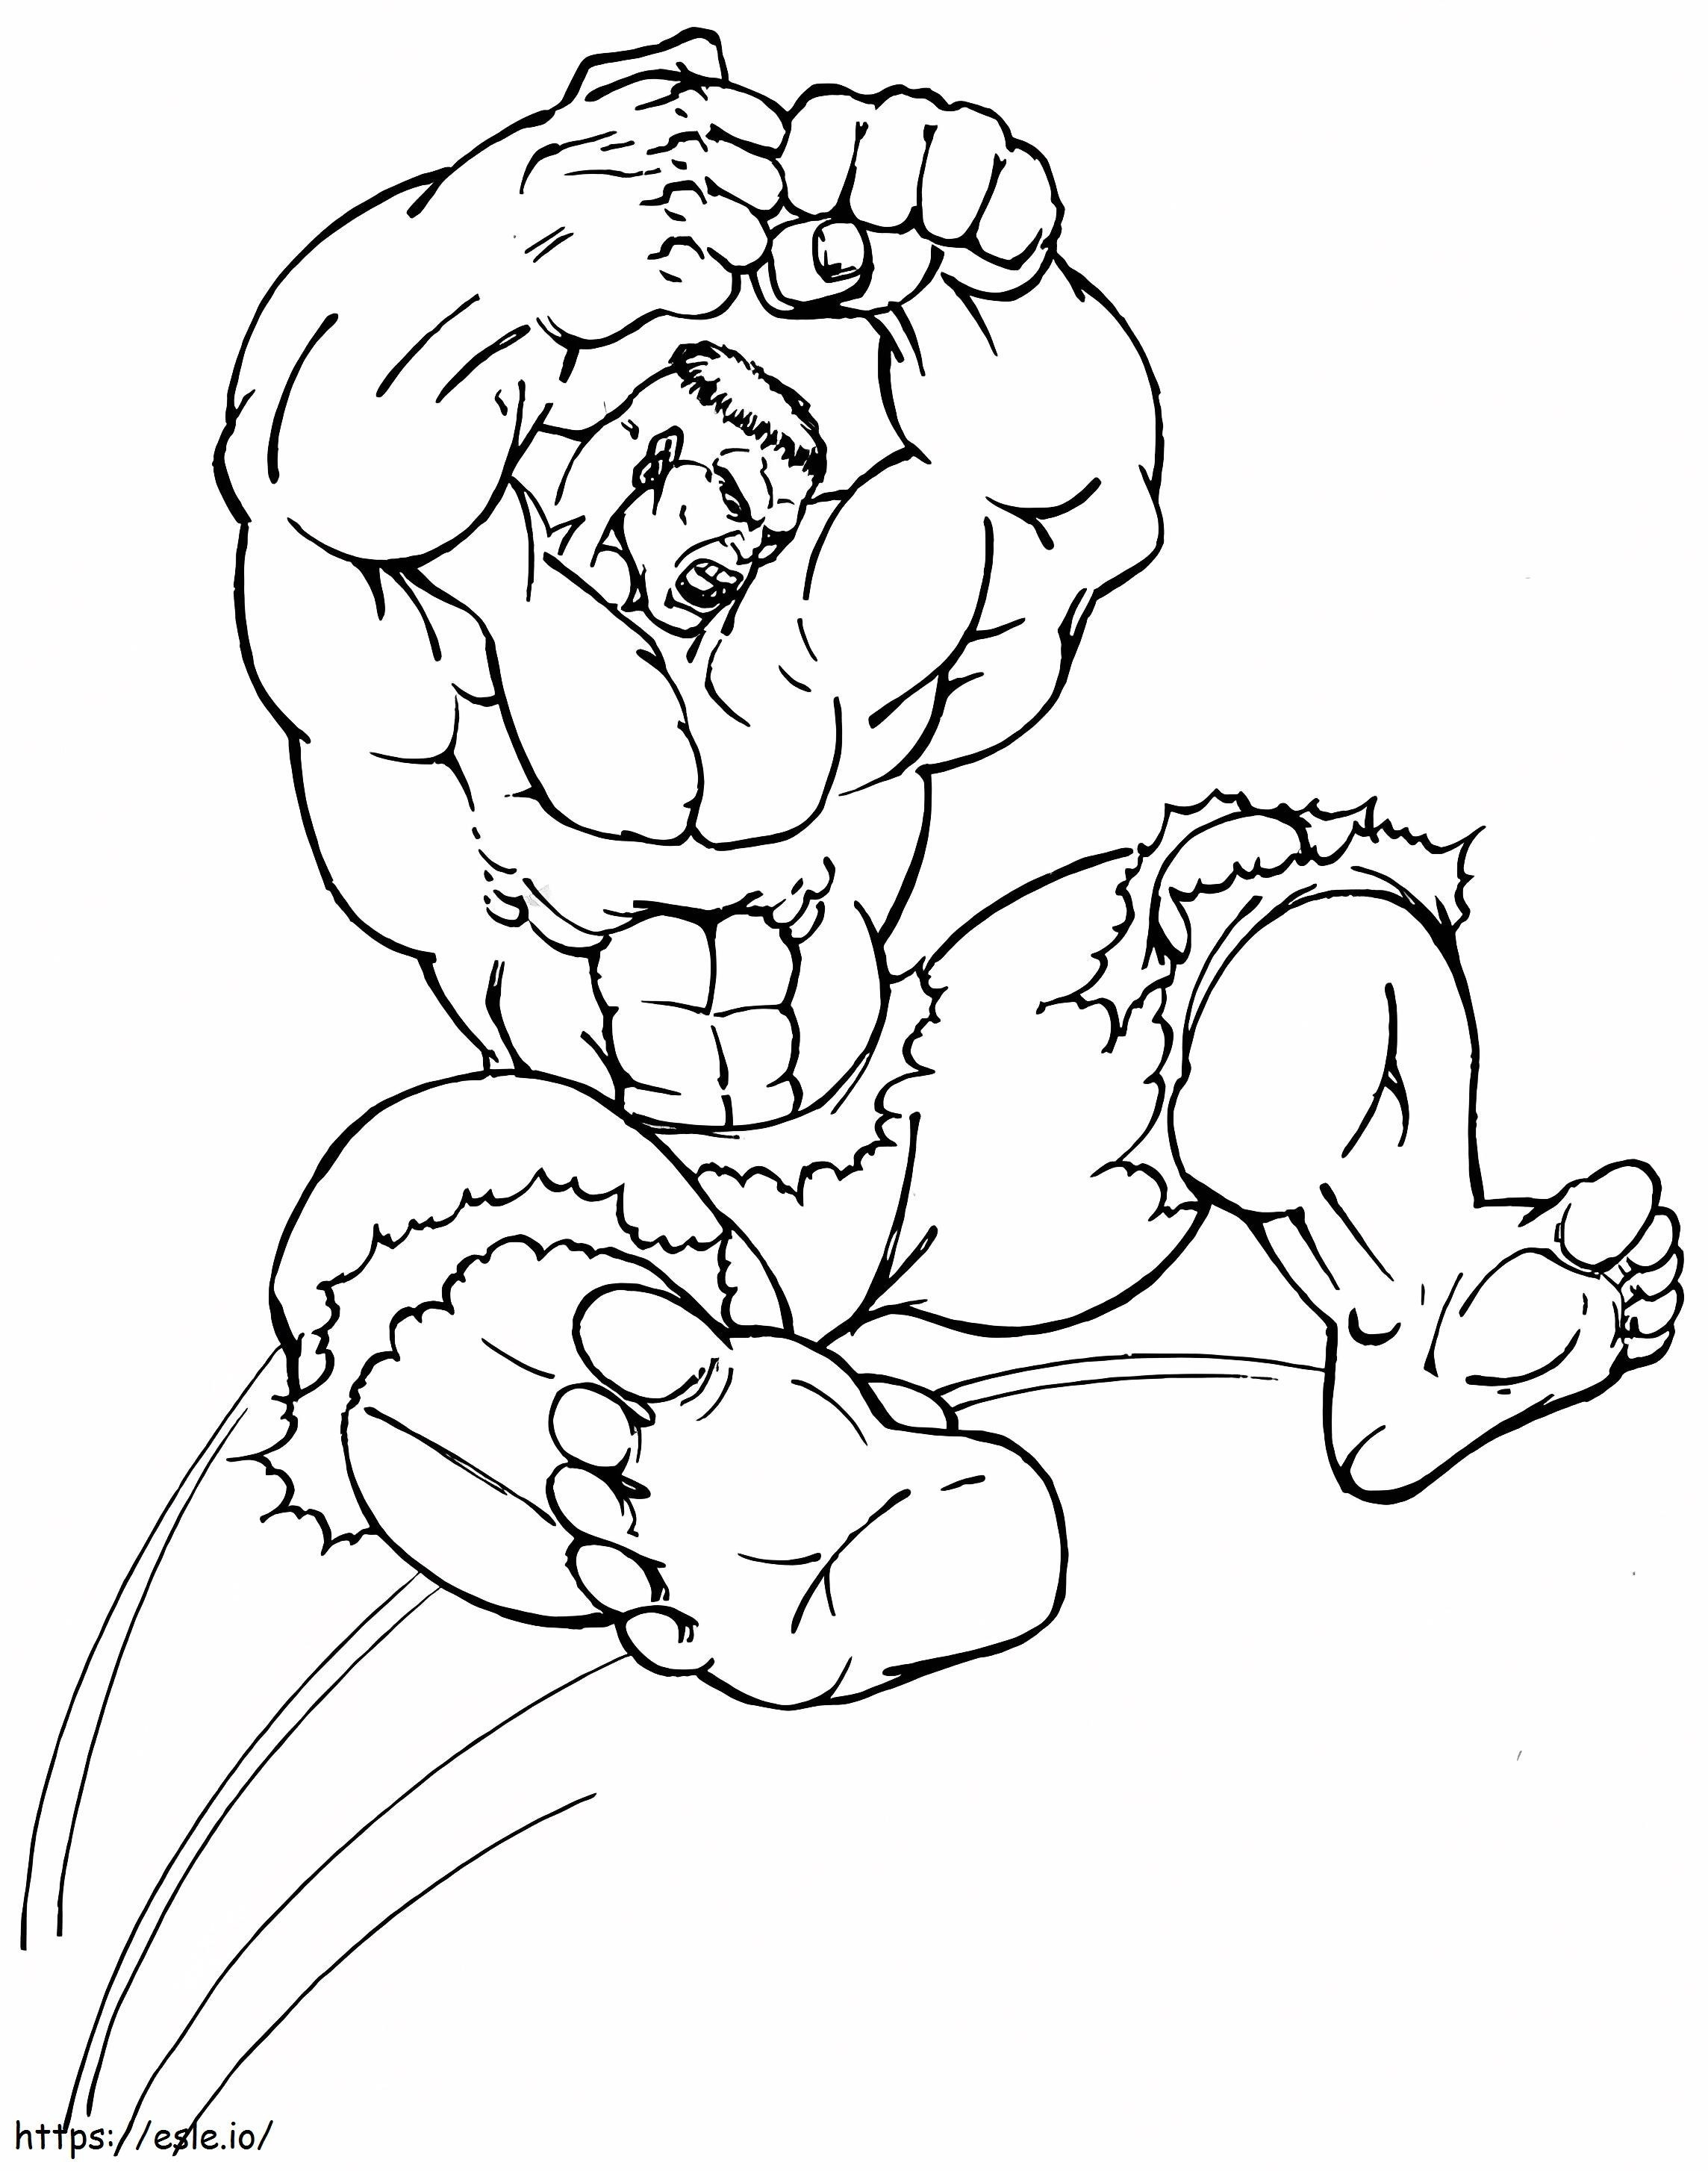 Hulk Jumping A4 coloring page